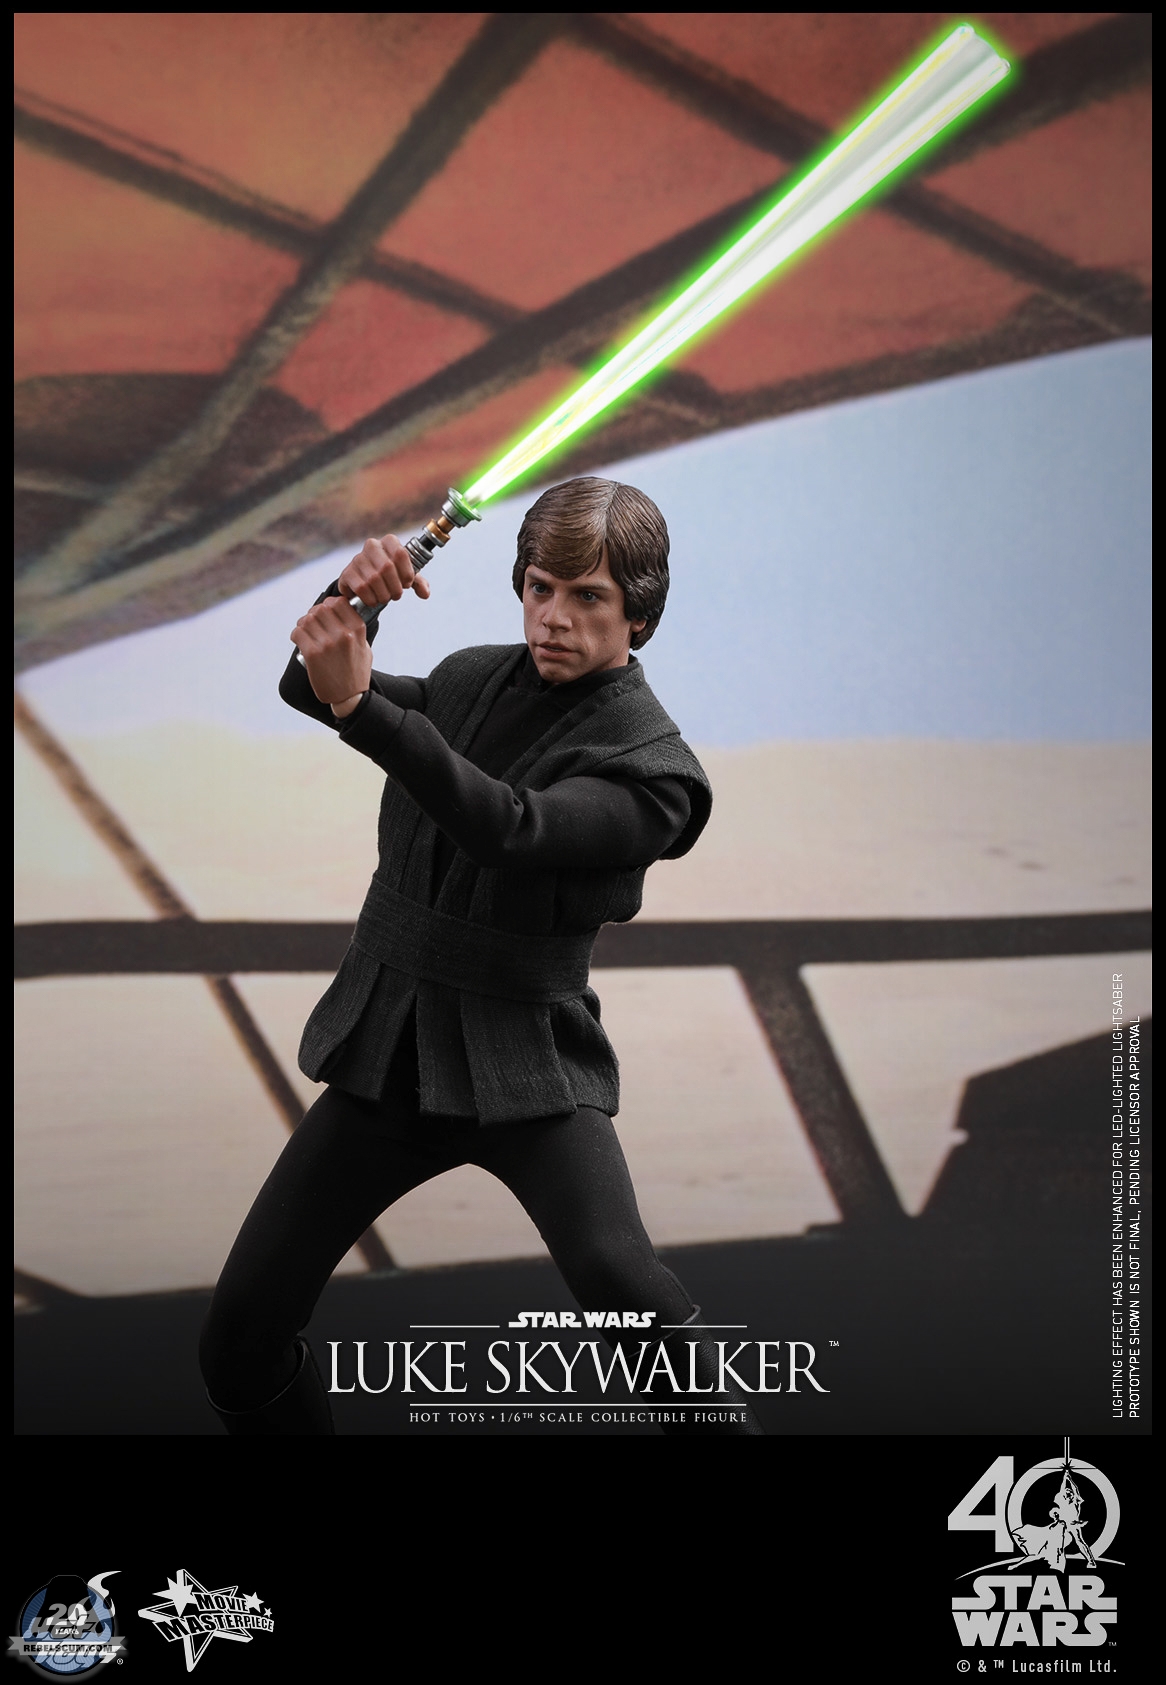 Hot-Toys-MMS429-Return-of-the-Jedi-Luke-Skywalker-009.jpg